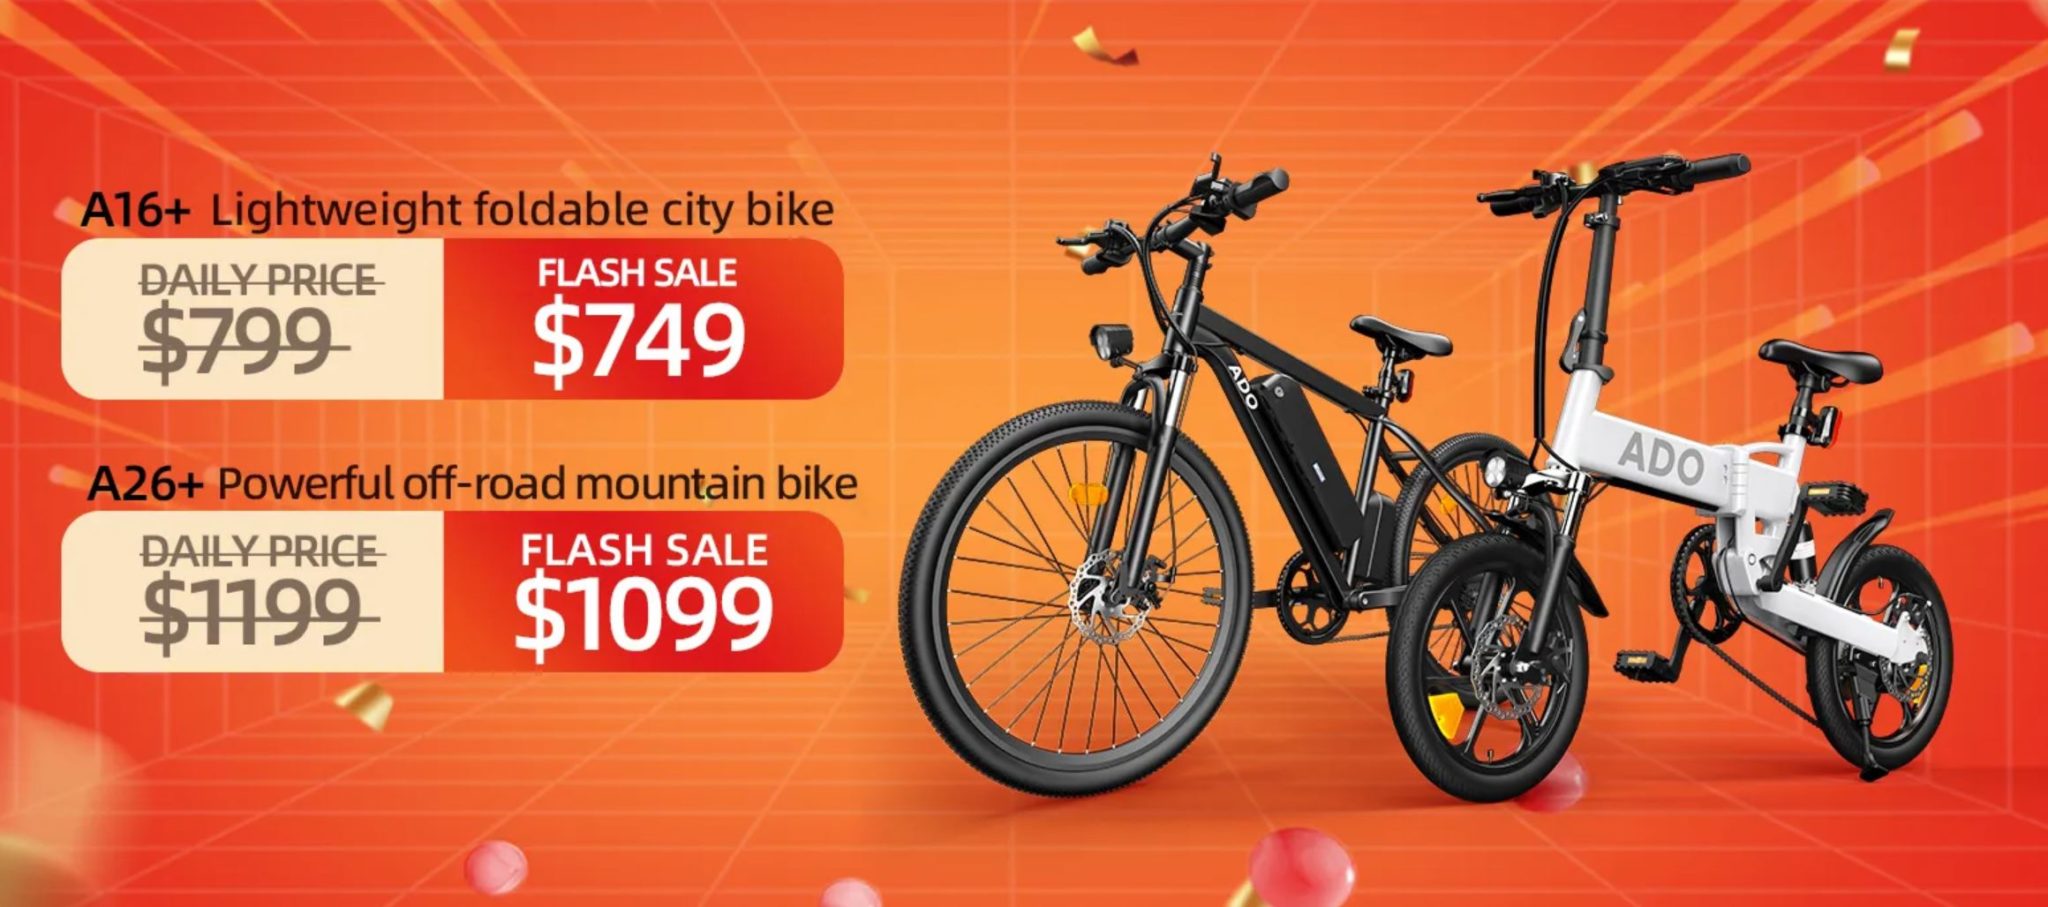 Promocja rowerów elektrycznych ADO 10 dni świetnych cen! - ADO A16